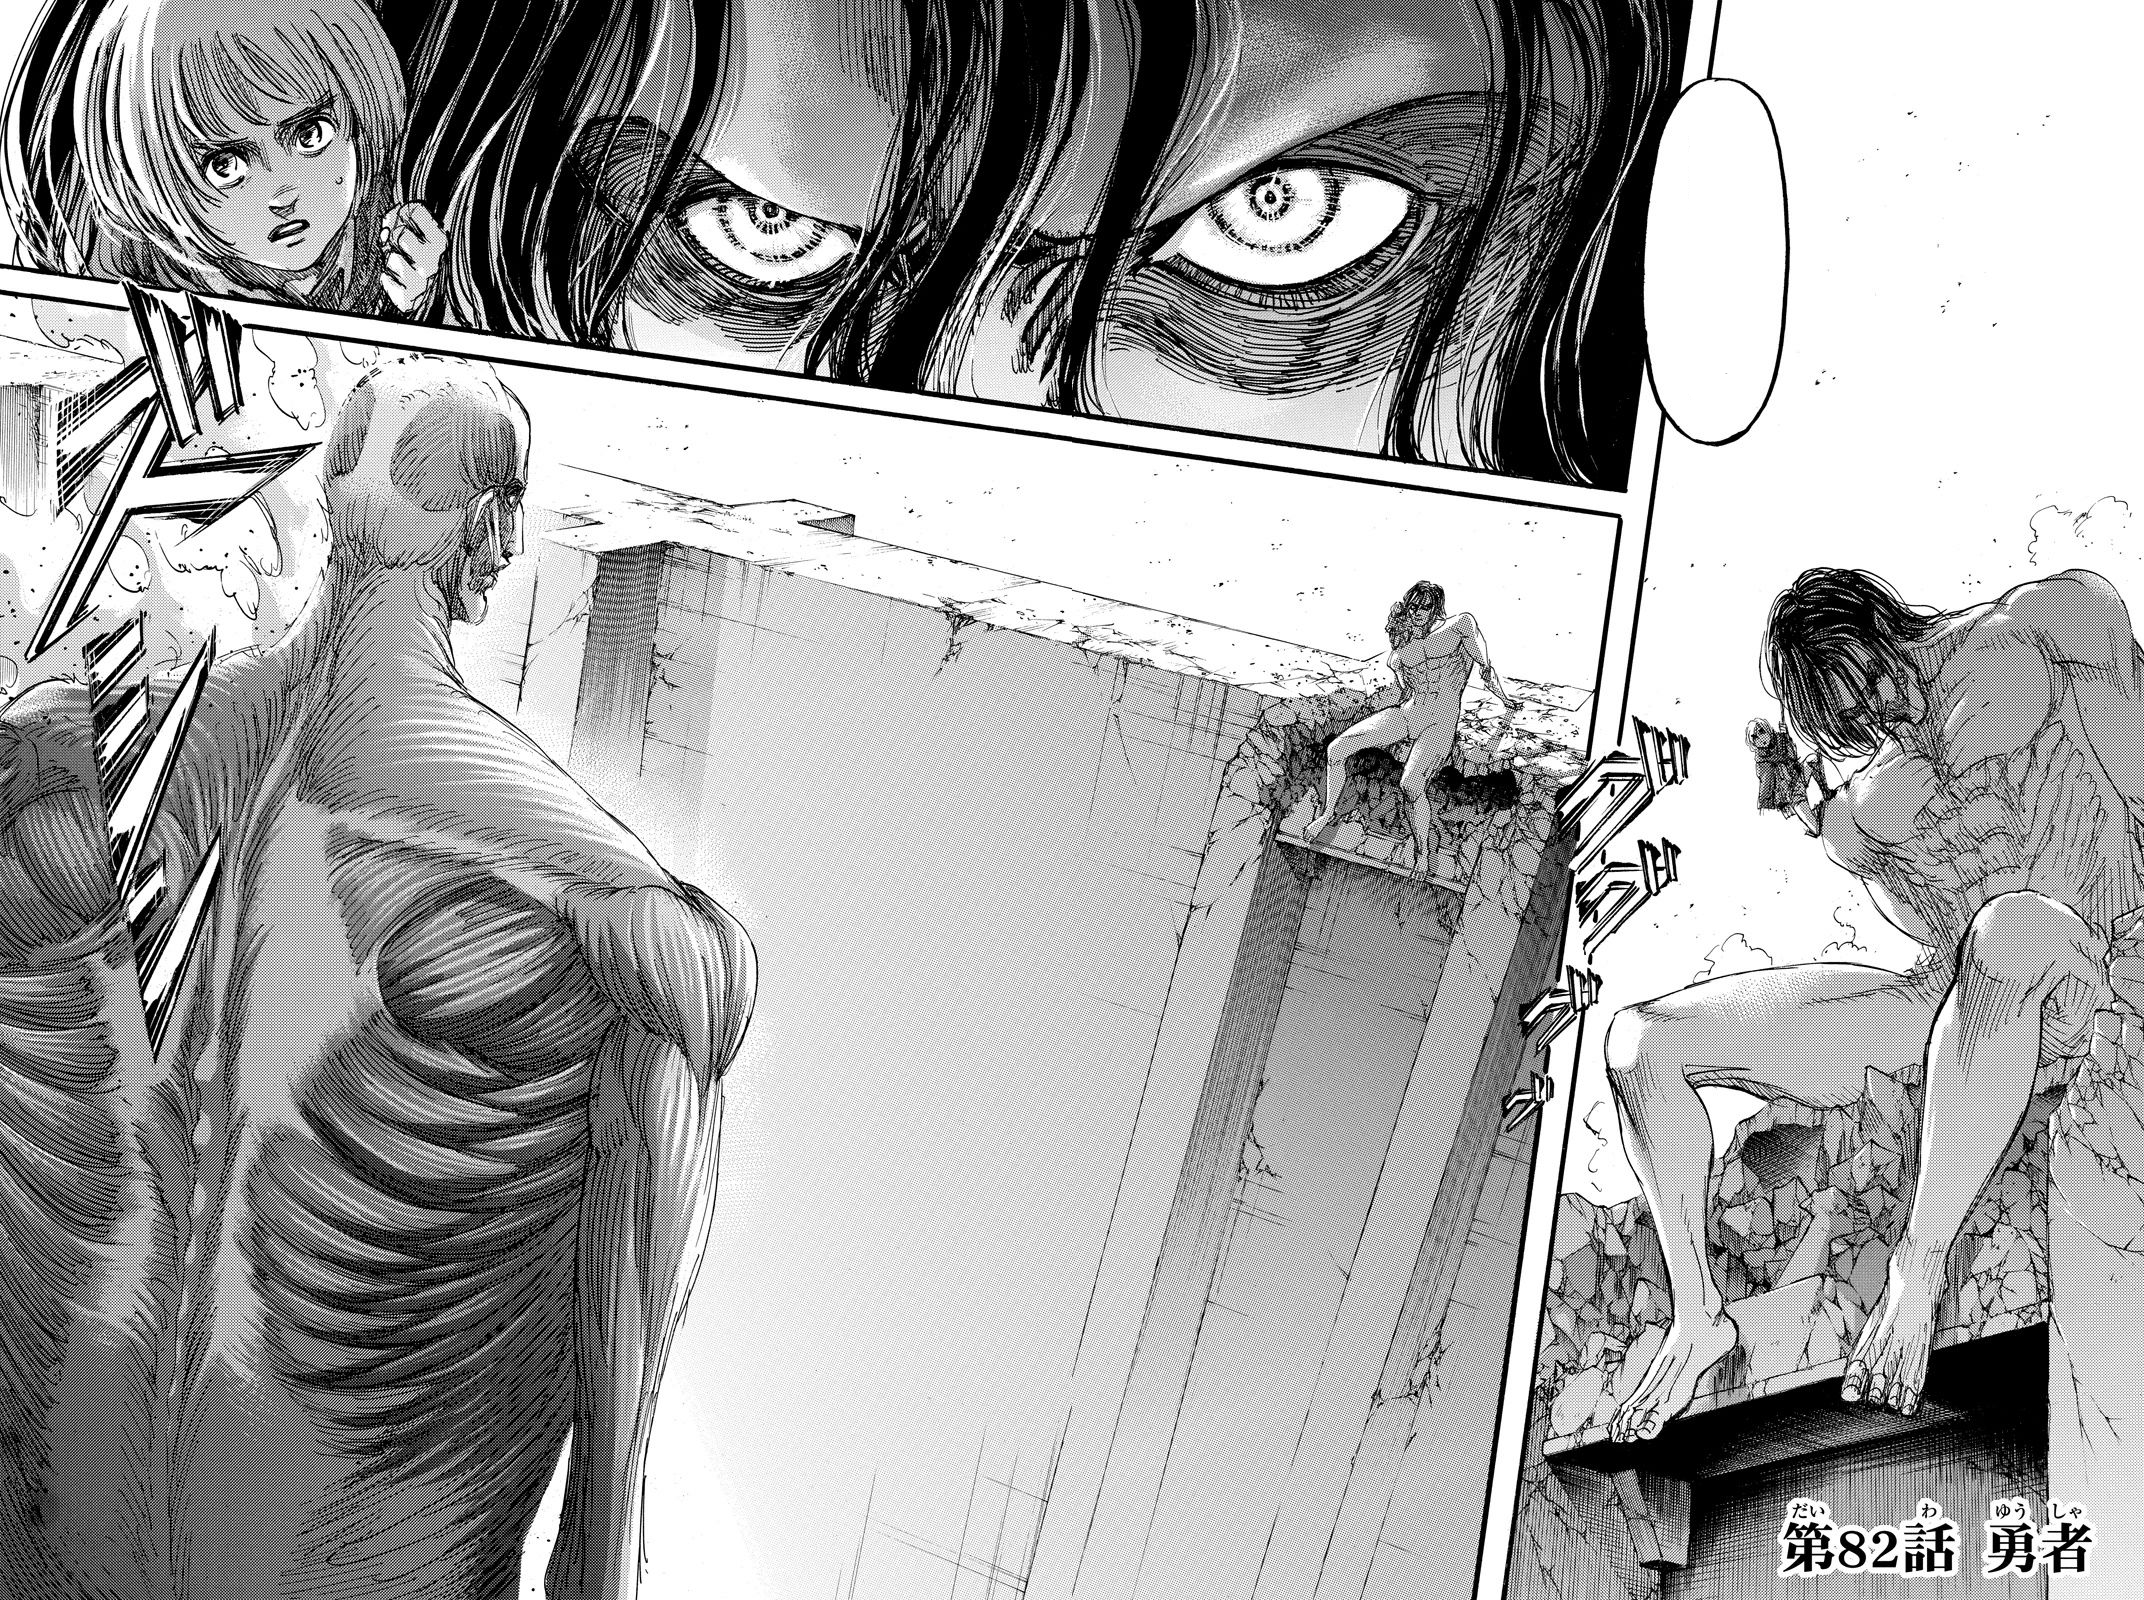 Pourquoi le manga « L'Attaque des titans » ravage tout sur son passage